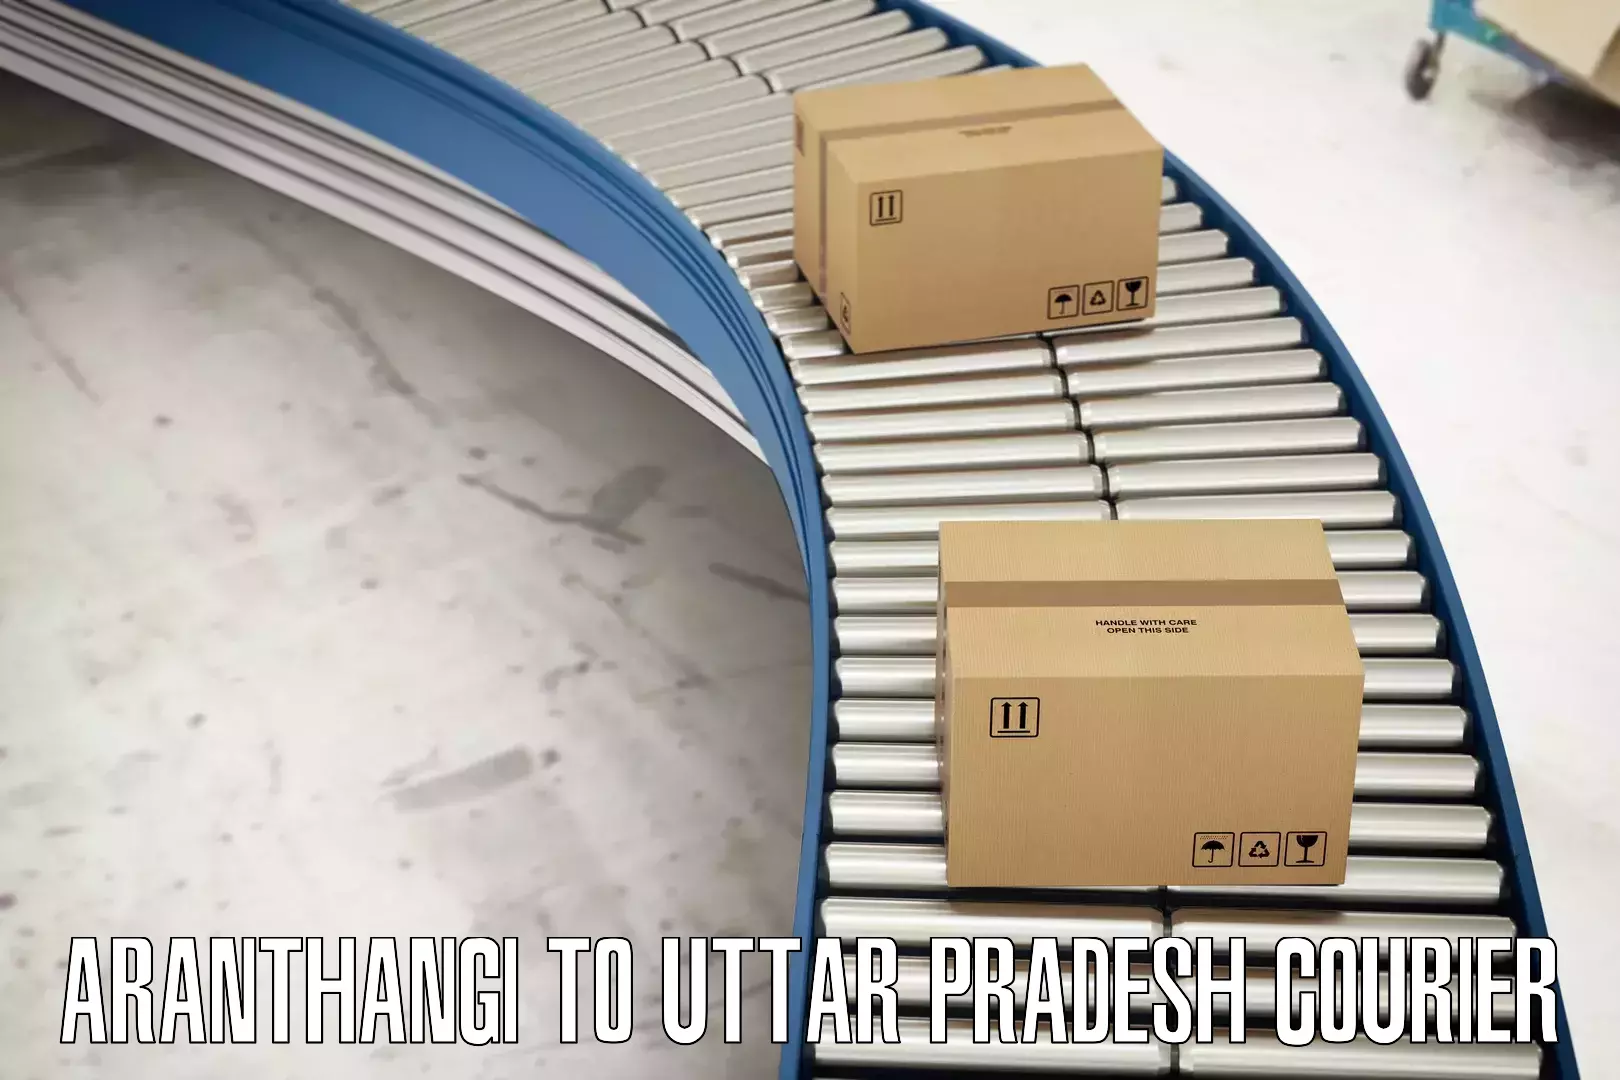 Customizable shipping options Aranthangi to Utraula